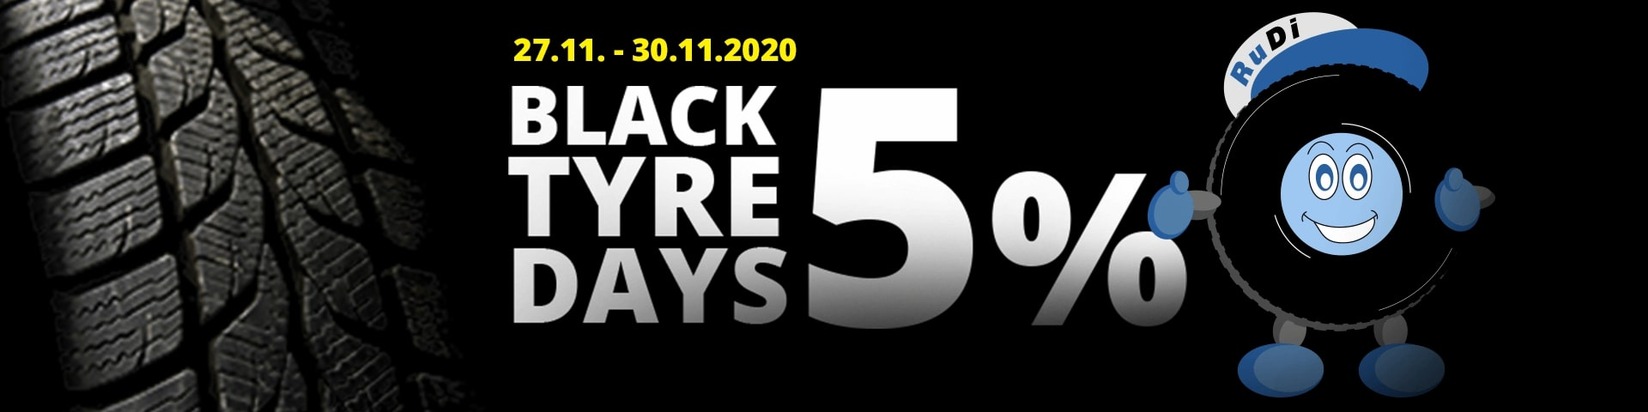 Black Tyre Days 2020: Hier sehen Kunden definitiv nicht schwarz - ReifenDirekt.de schenkt fünf Prozent